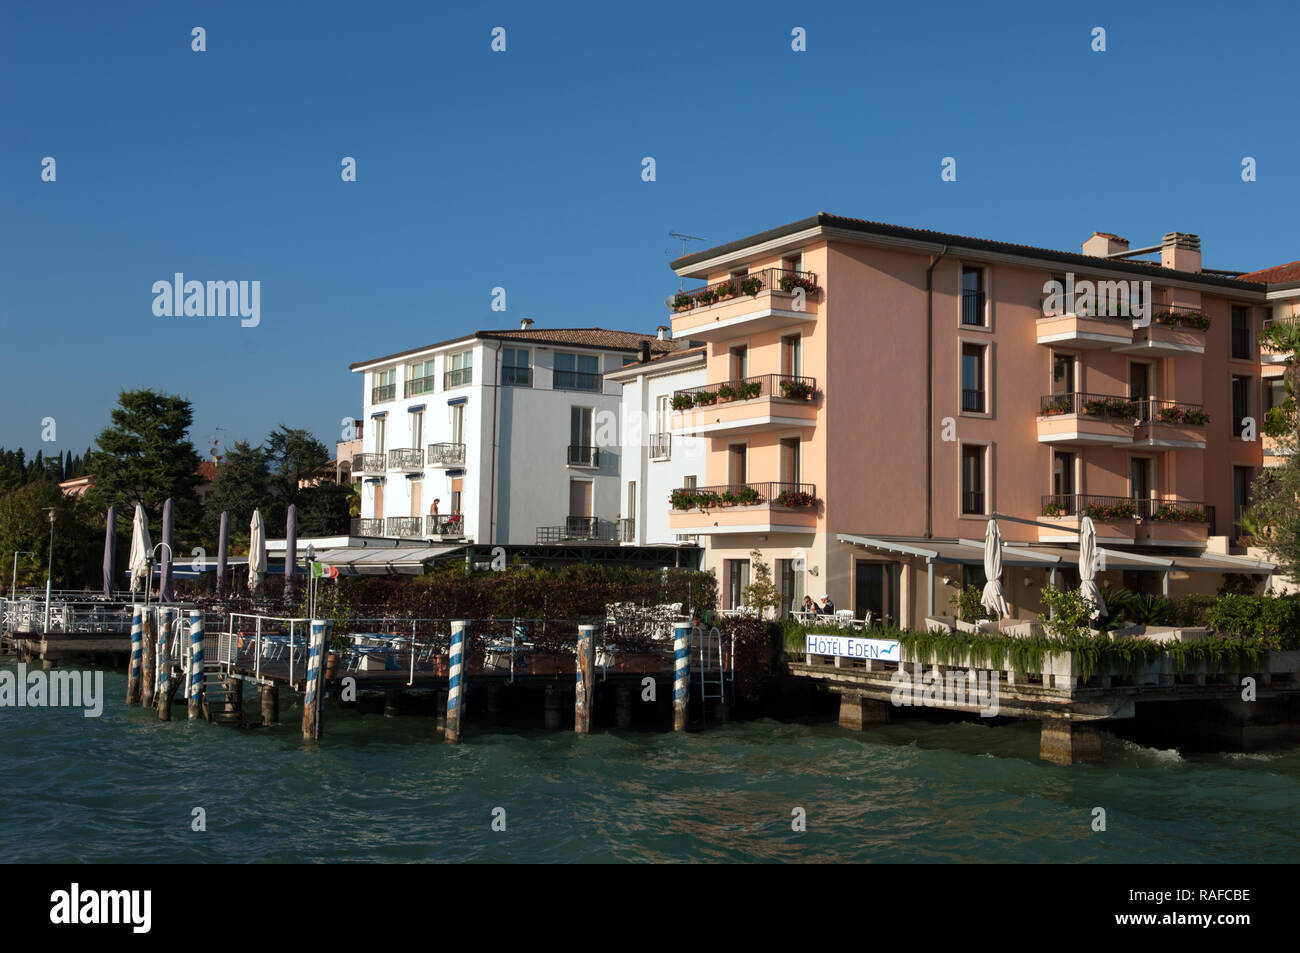 Hôtels bord de mer, Sirmione, Italie Banque D'Images